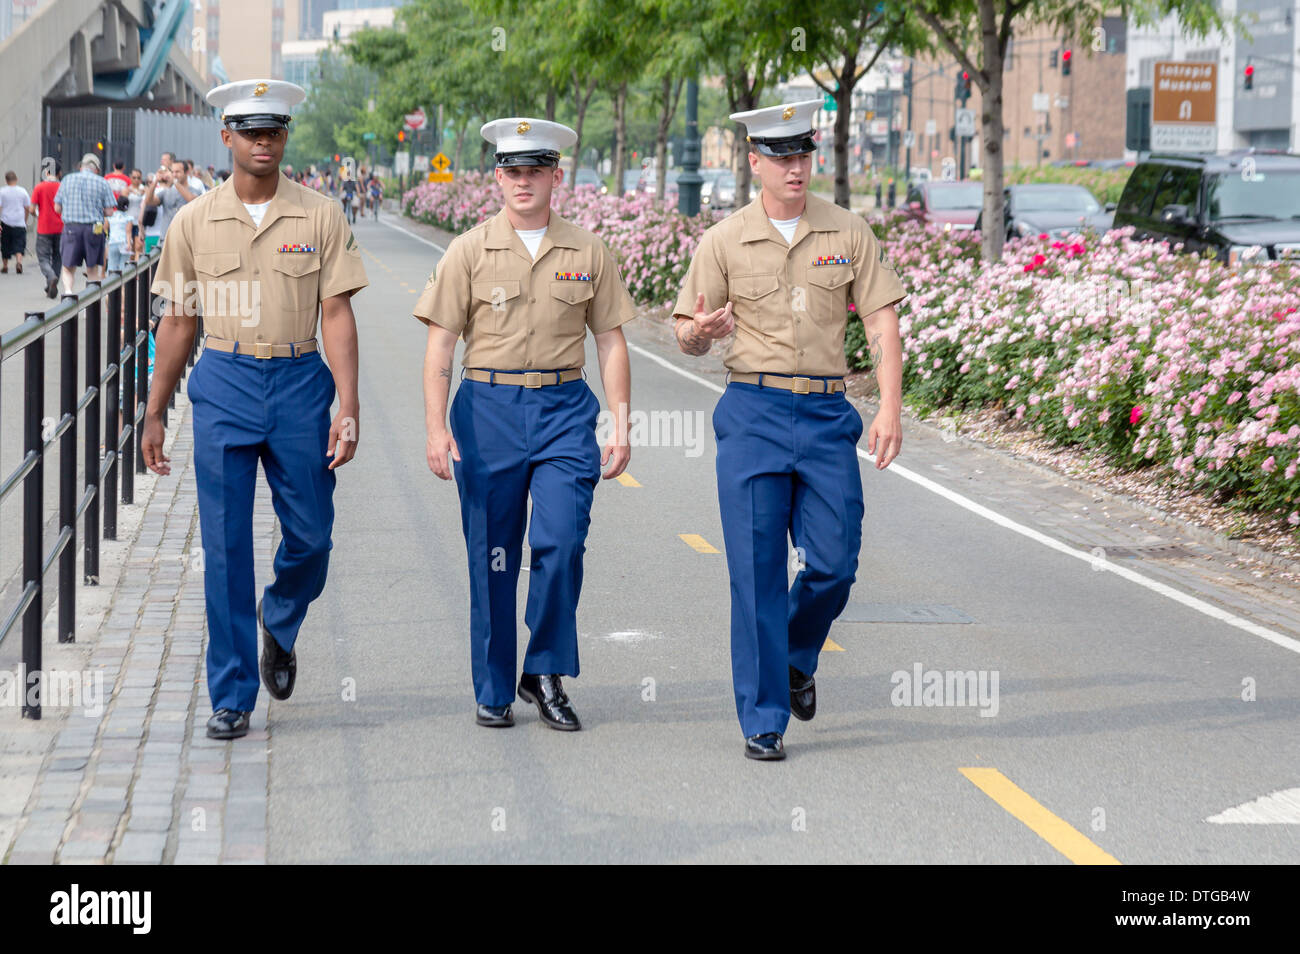 United States lance les Caporaux Marines à pied dans la ville de New York au cours de la célébration de la Semaine de la flotte. Banque D'Images